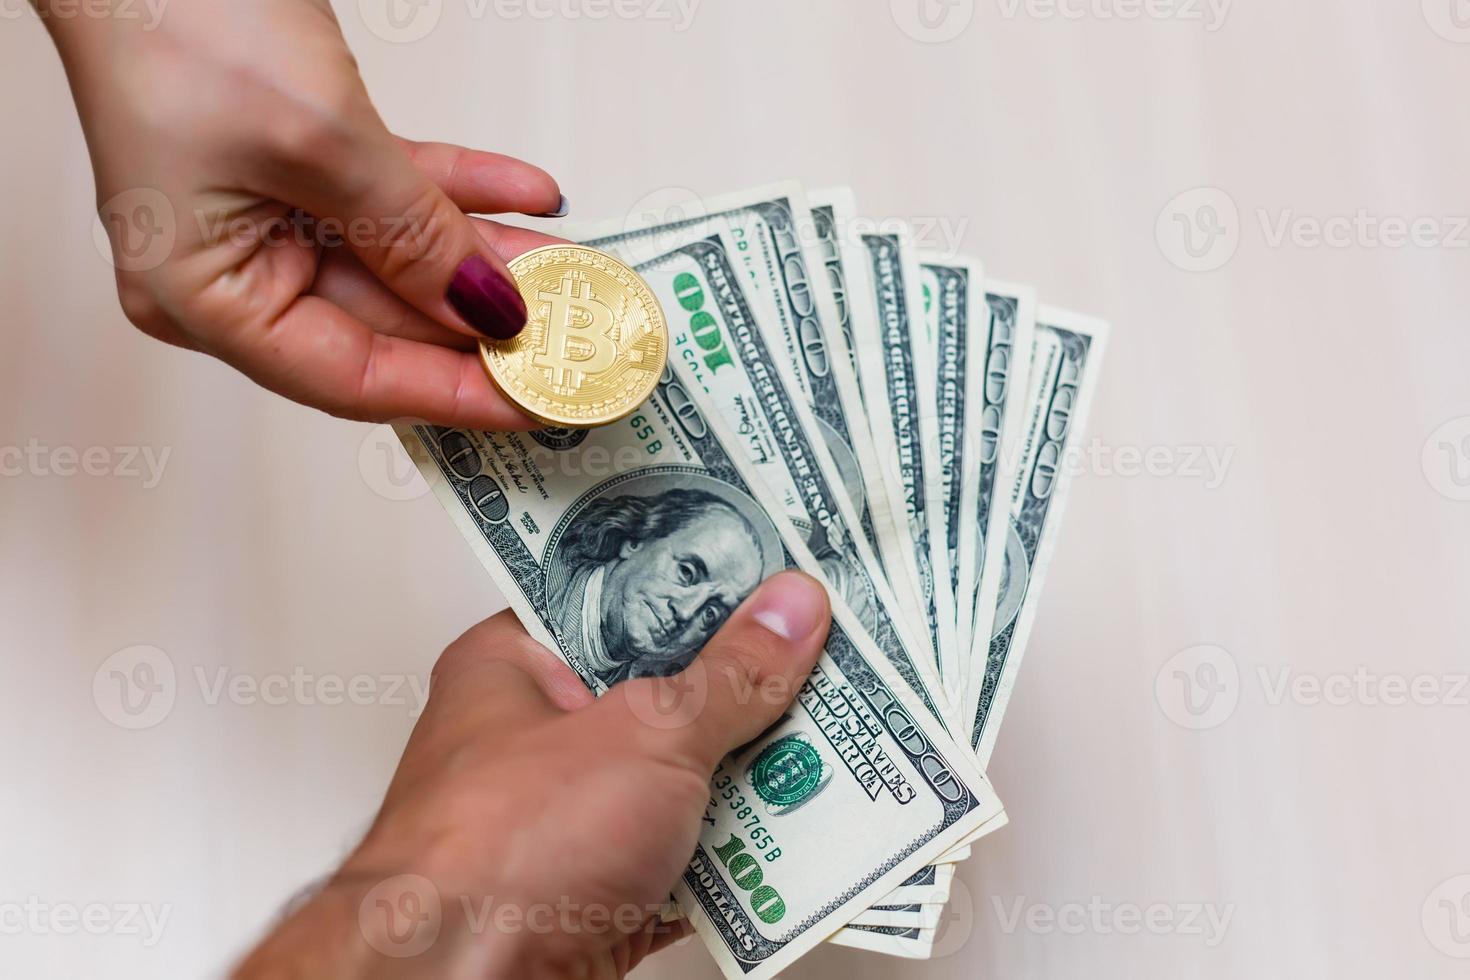 bitcoins dourados em dólares americanos nas mãos conceito de troca de dinheiro eletrônico foto